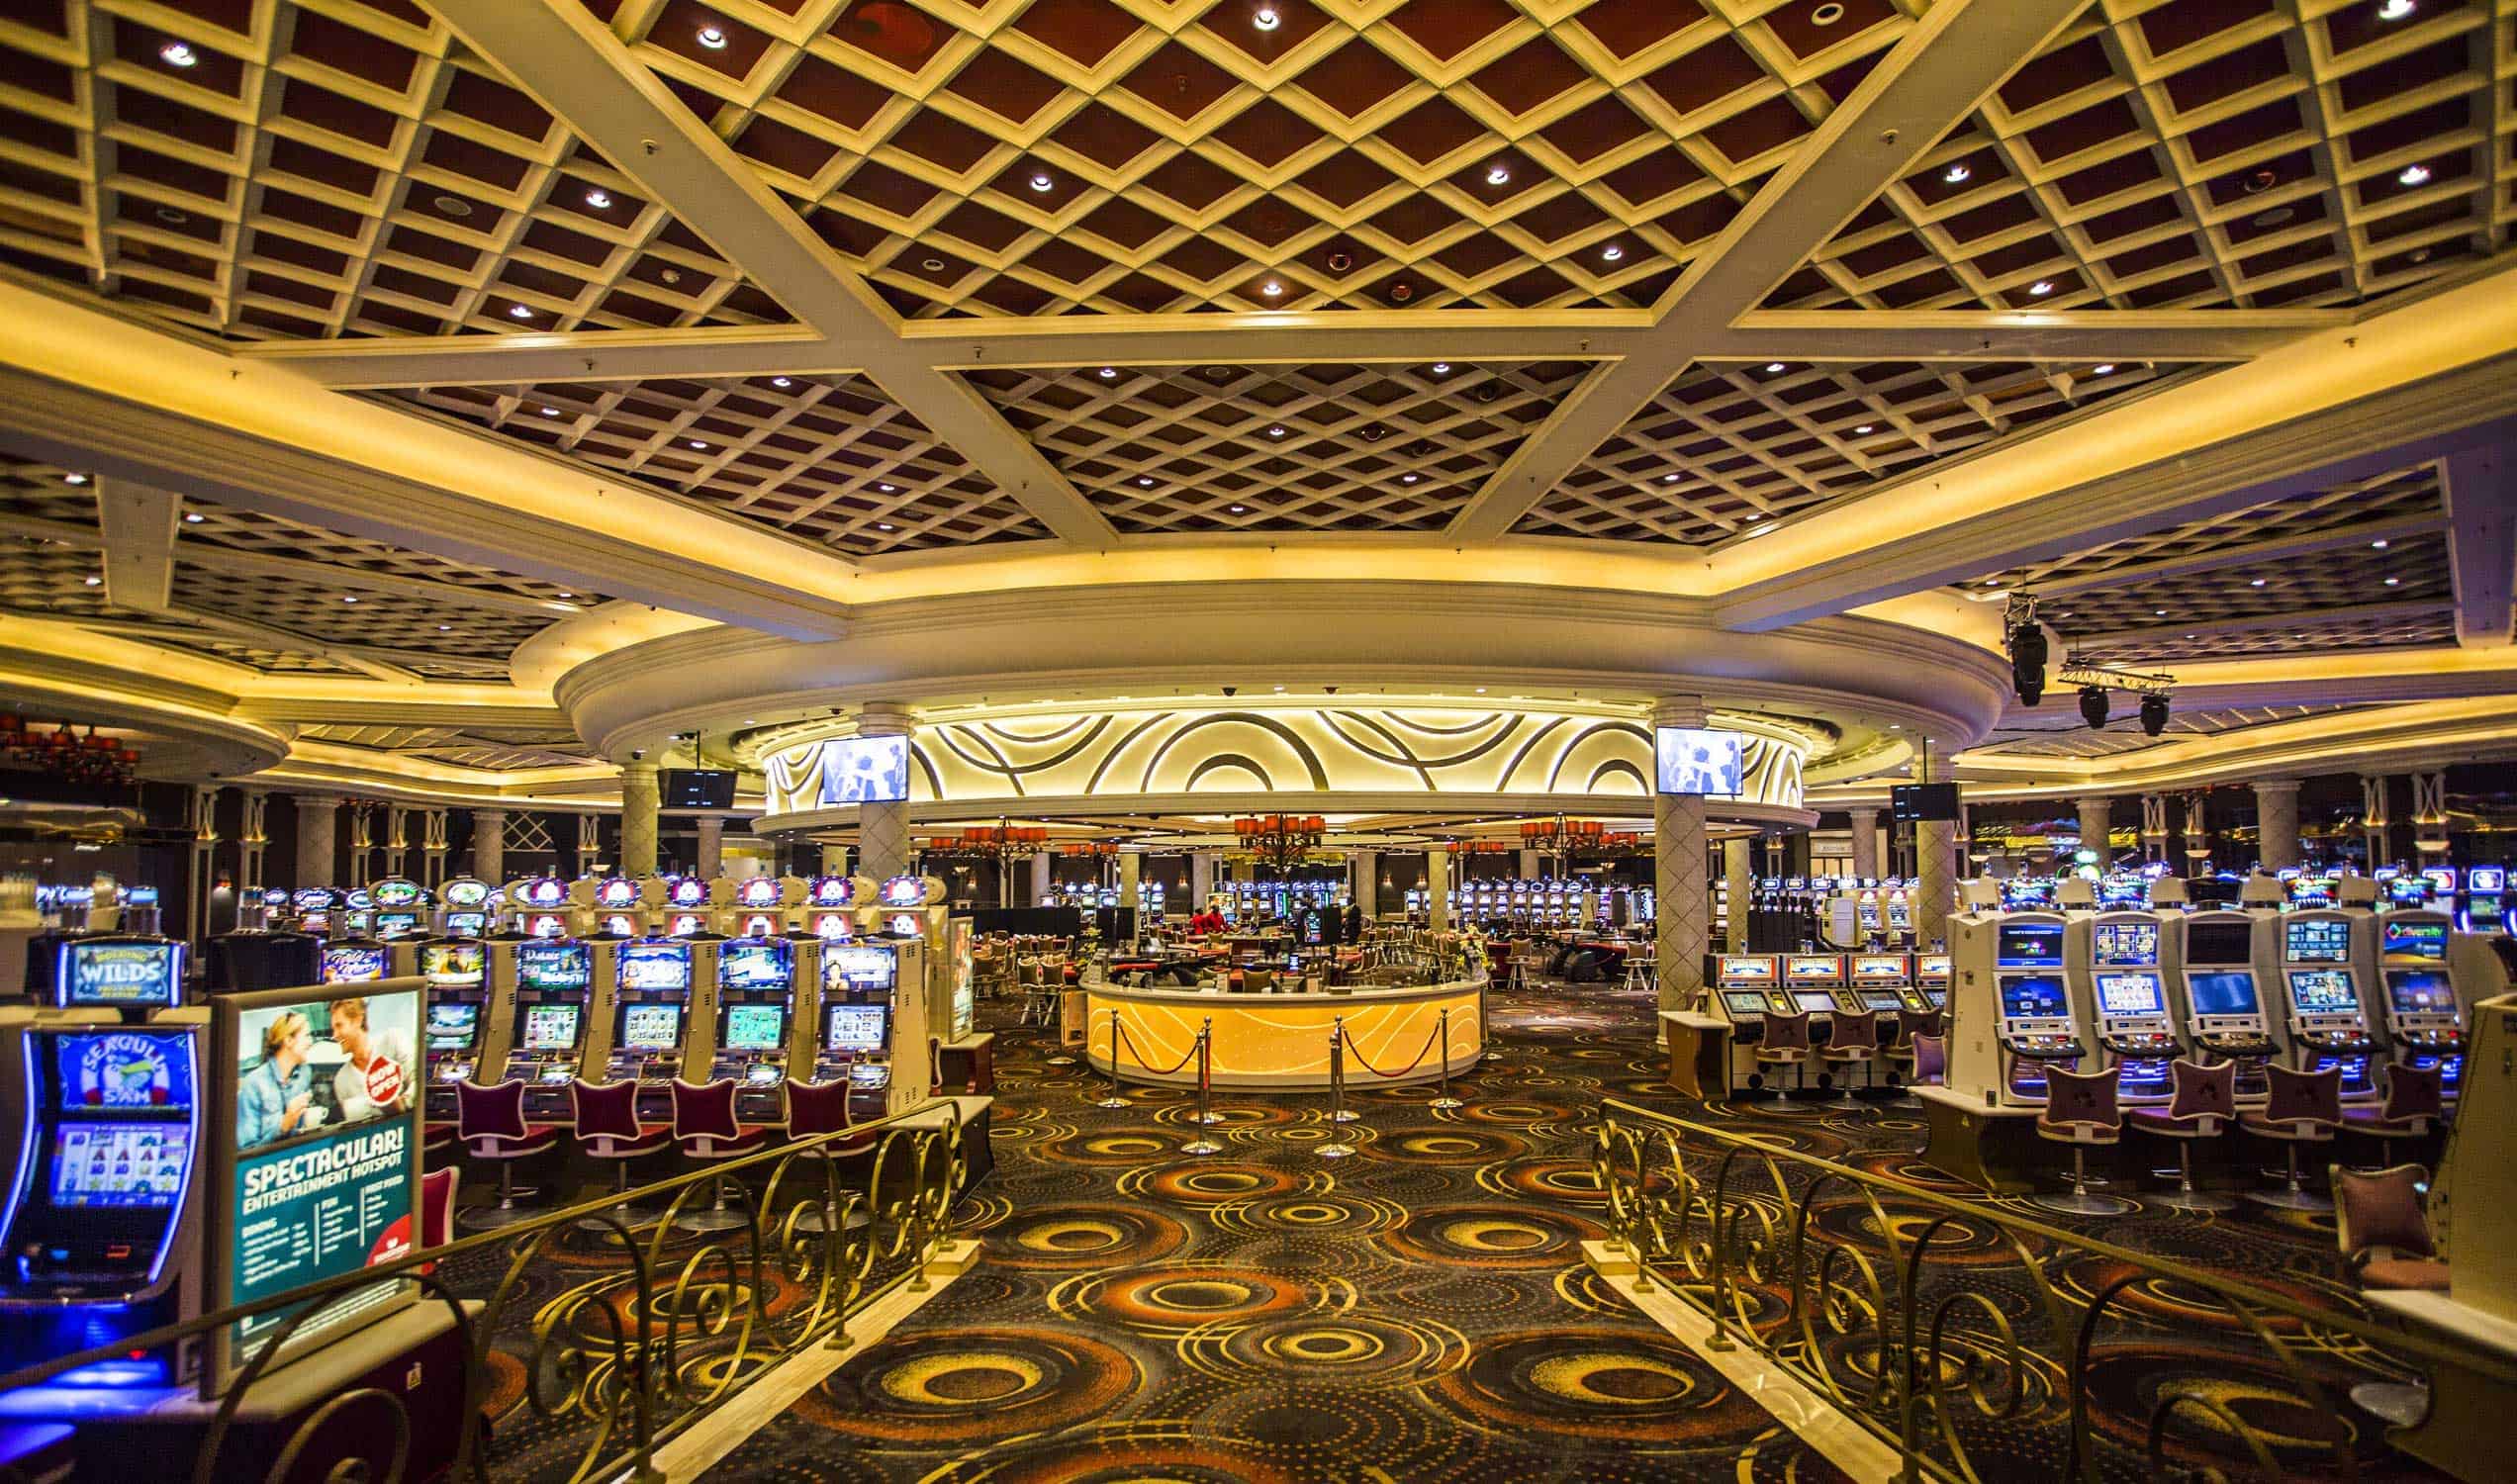 Silverstar's main casino floor area